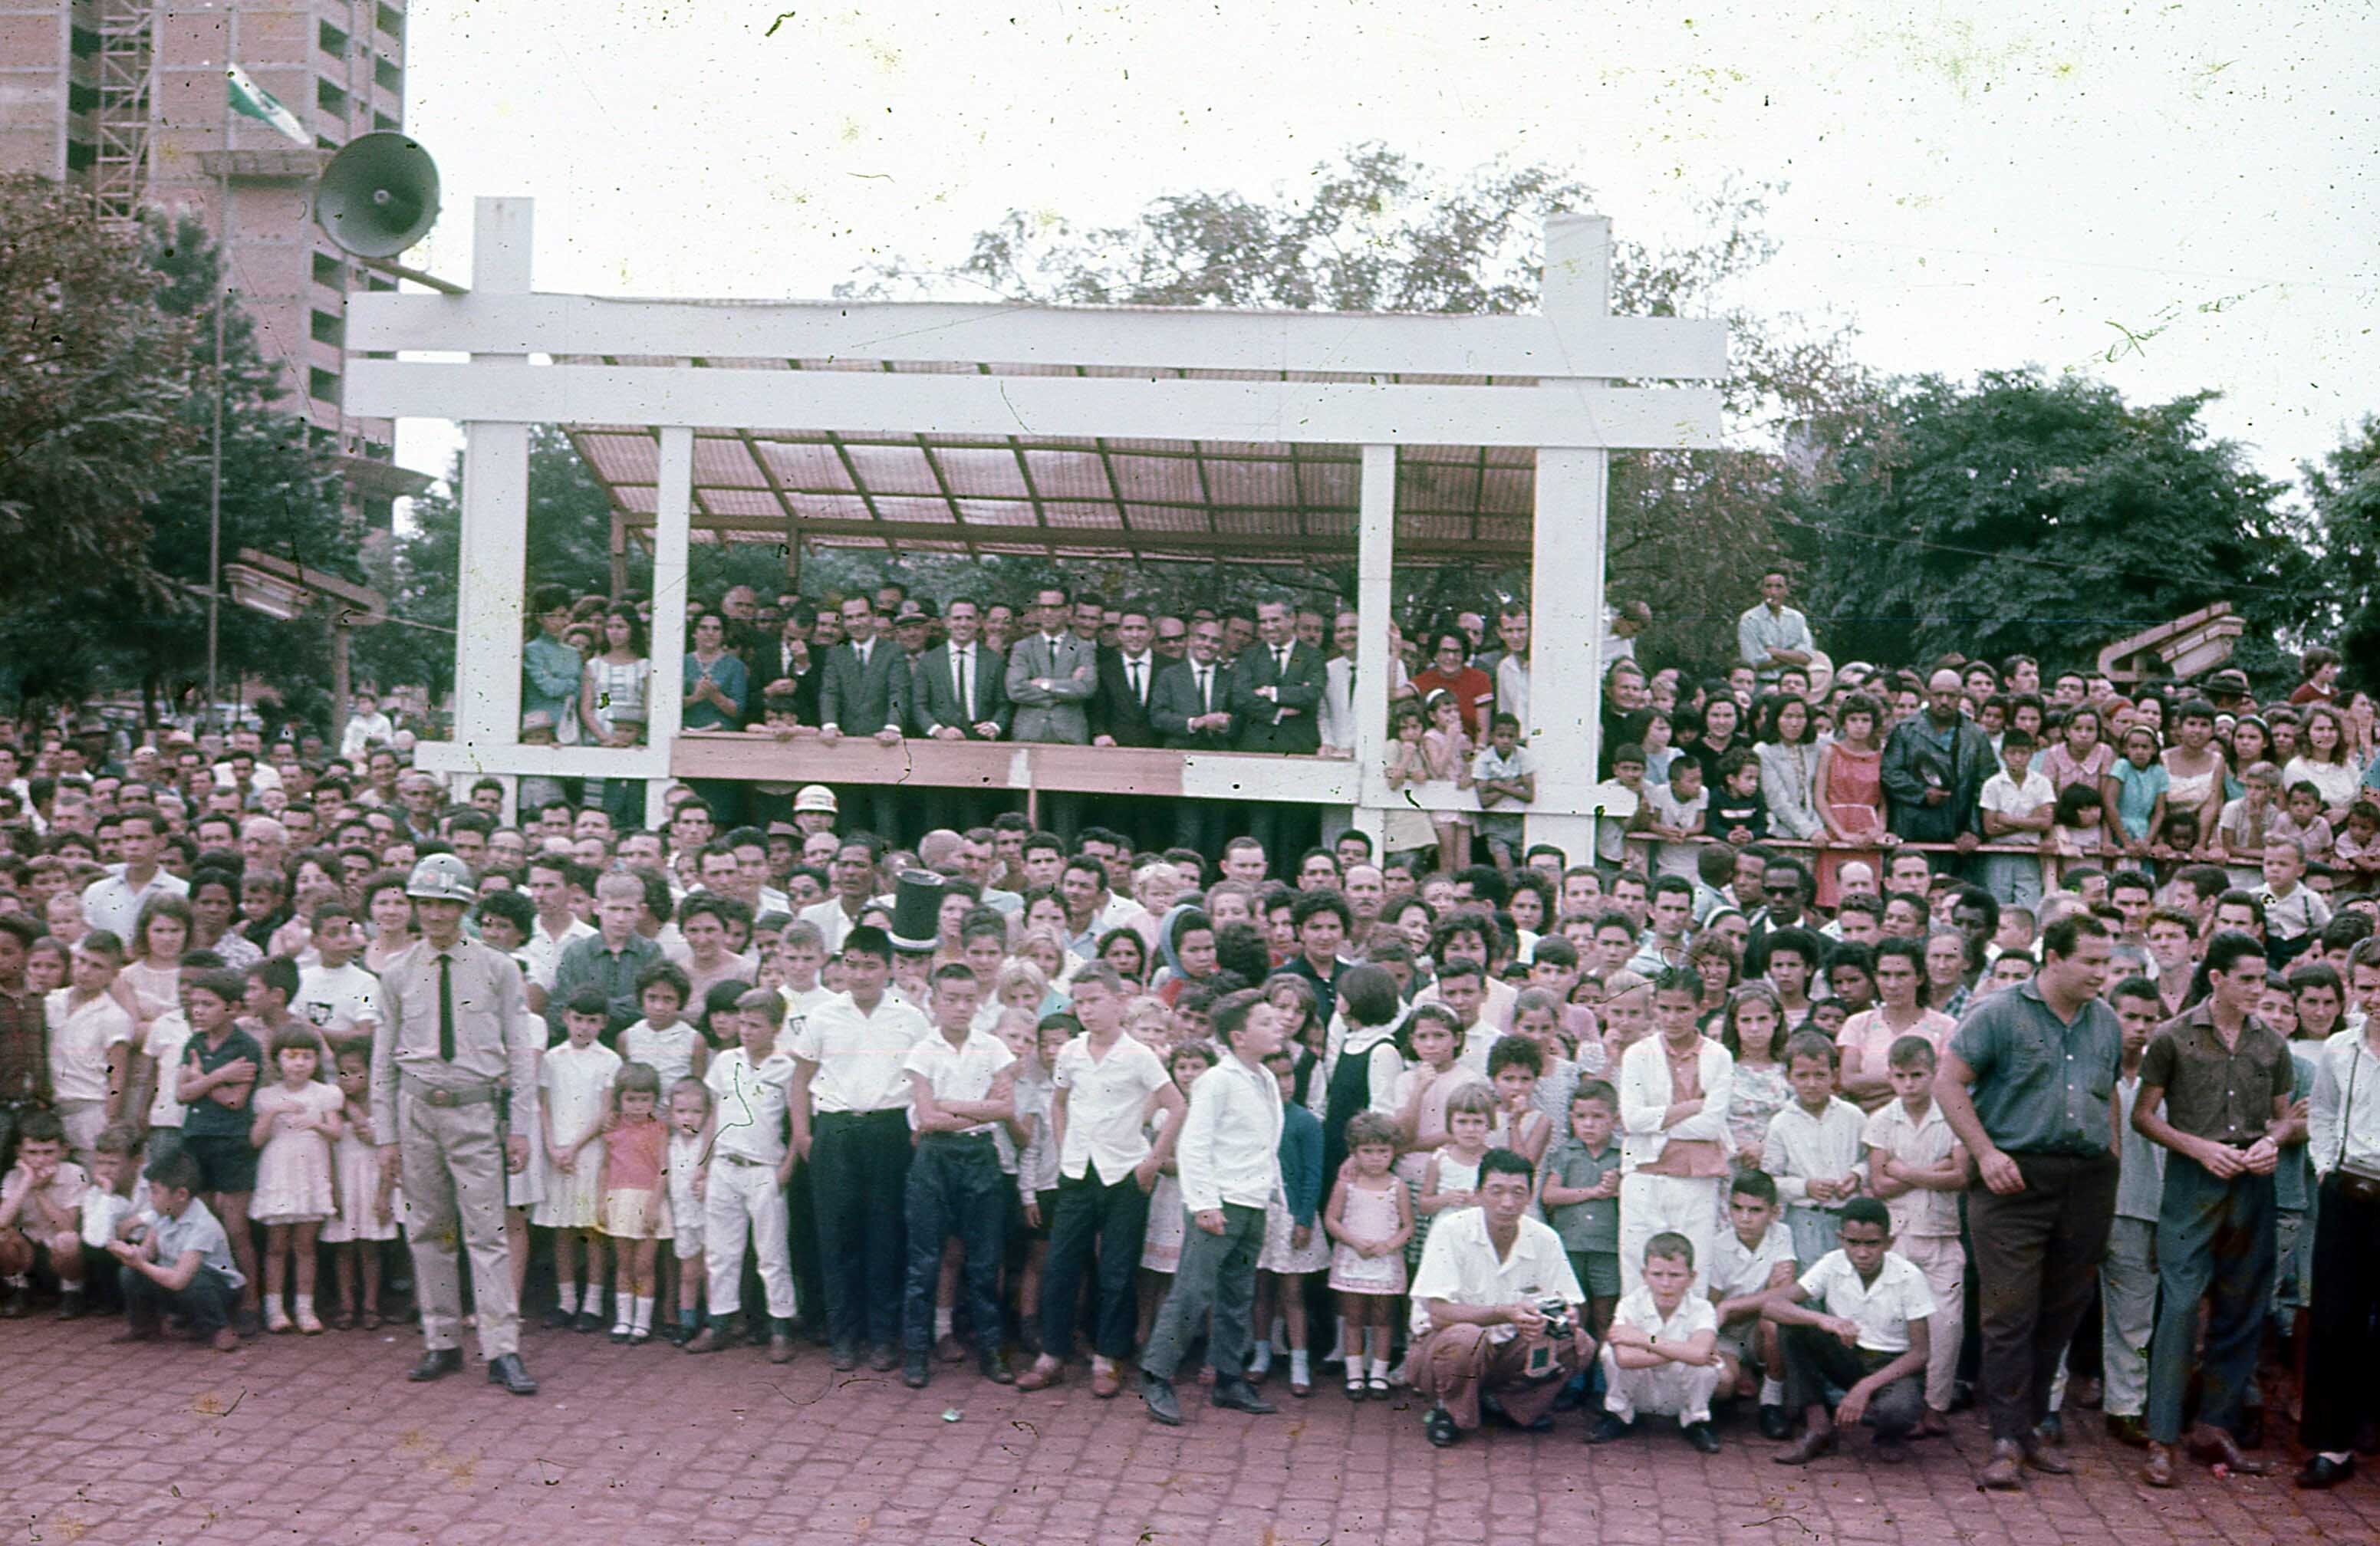 Público e palanque de autoridades - 1967